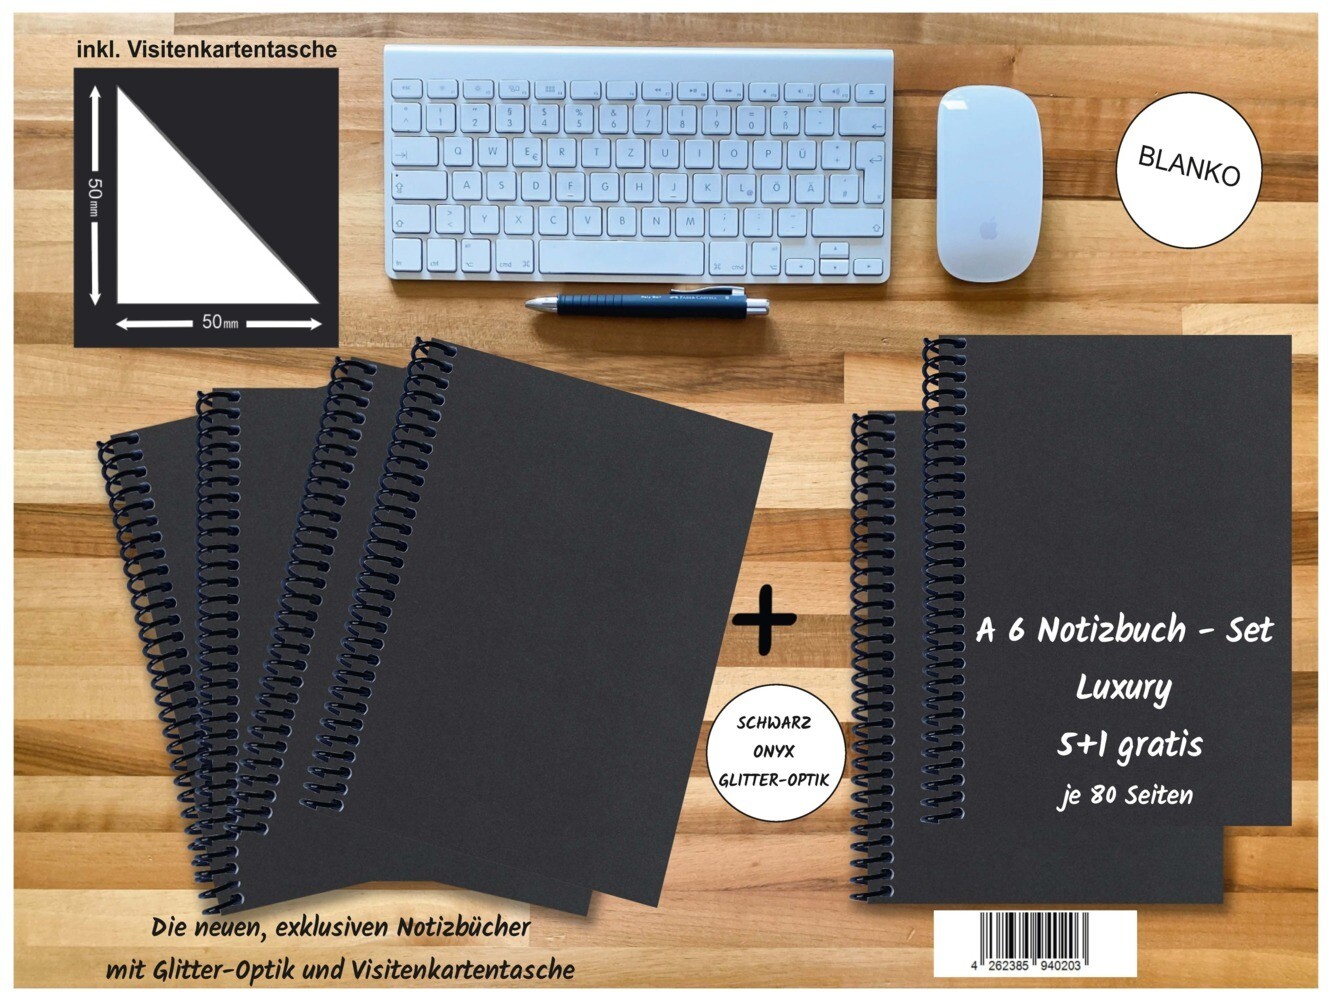 A 6 Notizbuch - Set 4+2 gratis Luxury 80 Seiten SCHWARZ ONYX GLITTER-OPTIK blanko